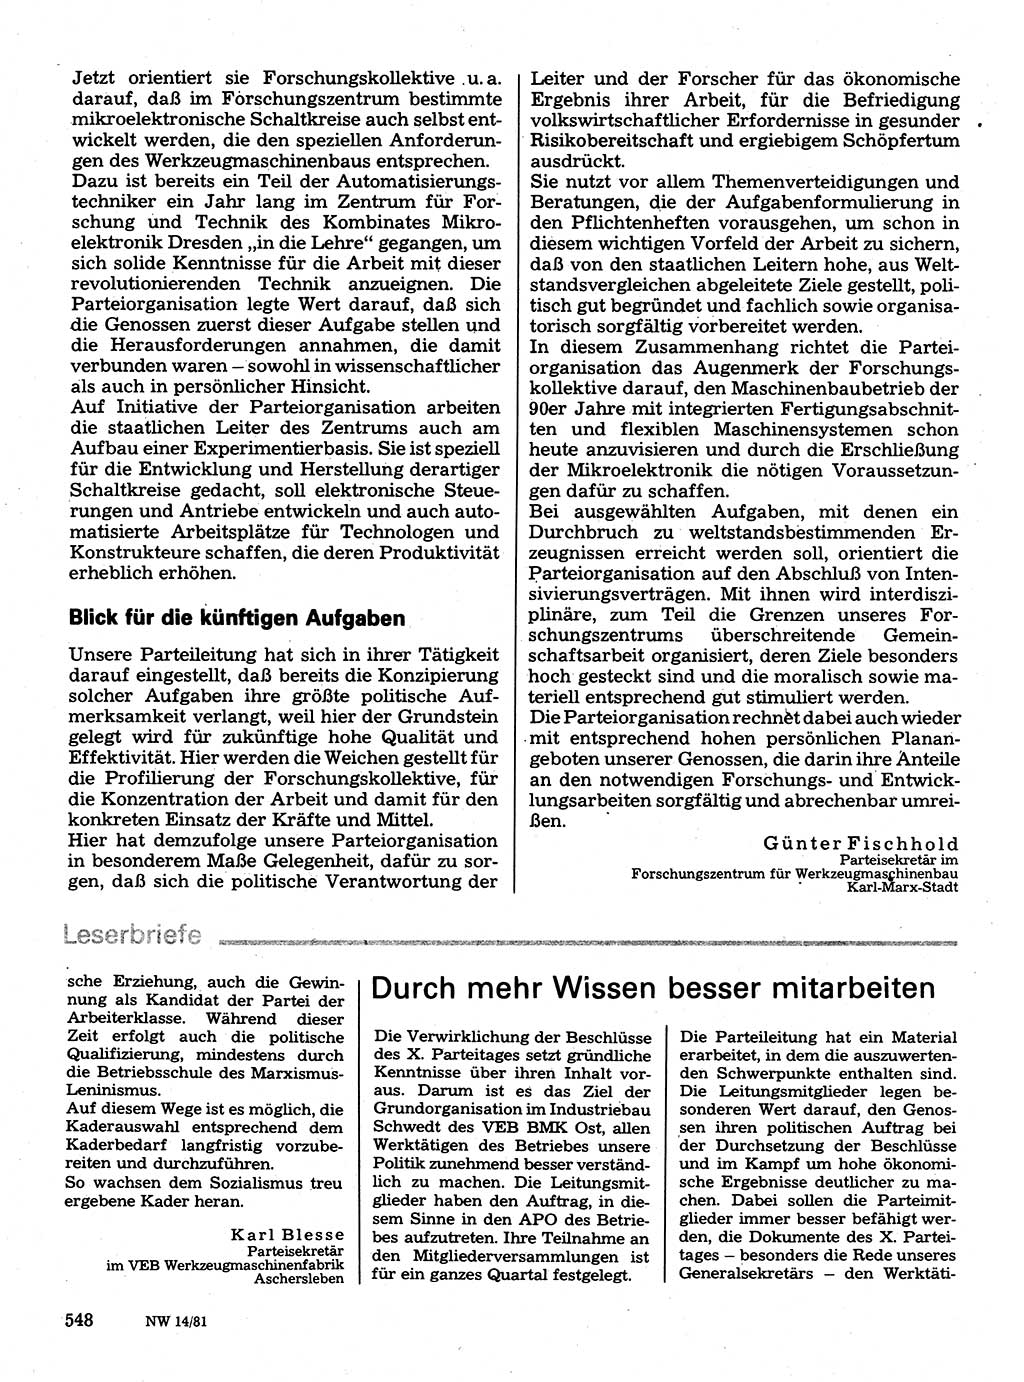 Neuer Weg (NW), Organ des Zentralkomitees (ZK) der SED (Sozialistische Einheitspartei Deutschlands) für Fragen des Parteilebens, 36. Jahrgang [Deutsche Demokratische Republik (DDR)] 1981, Seite 548 (NW ZK SED DDR 1981, S. 548)